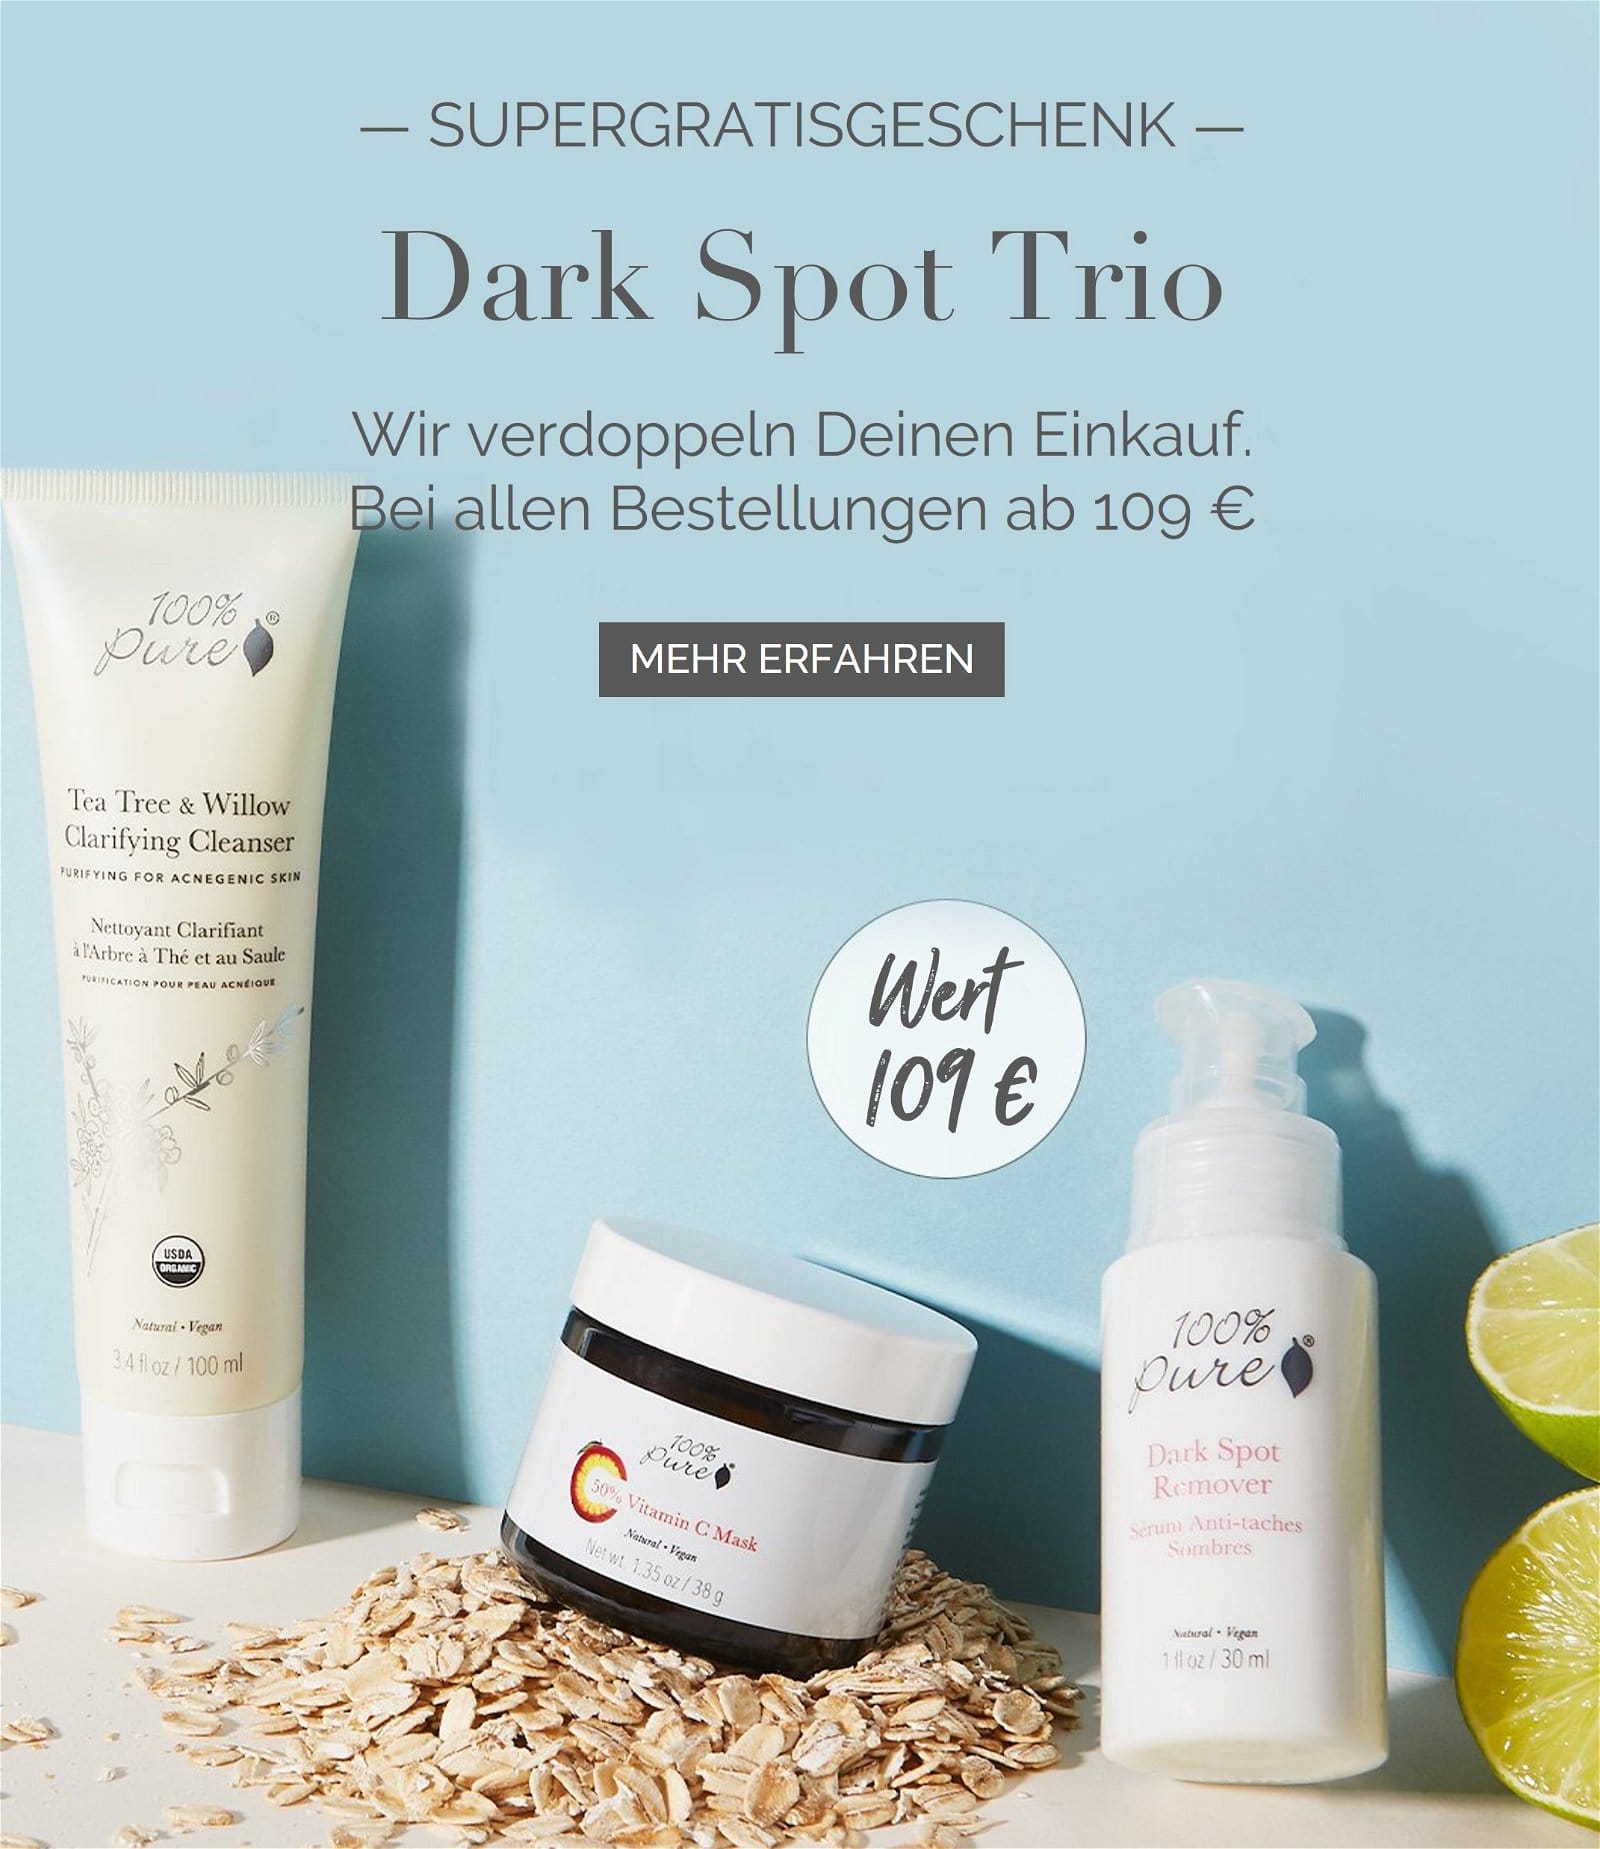 Dark Spot Trio im Wert von 109 €